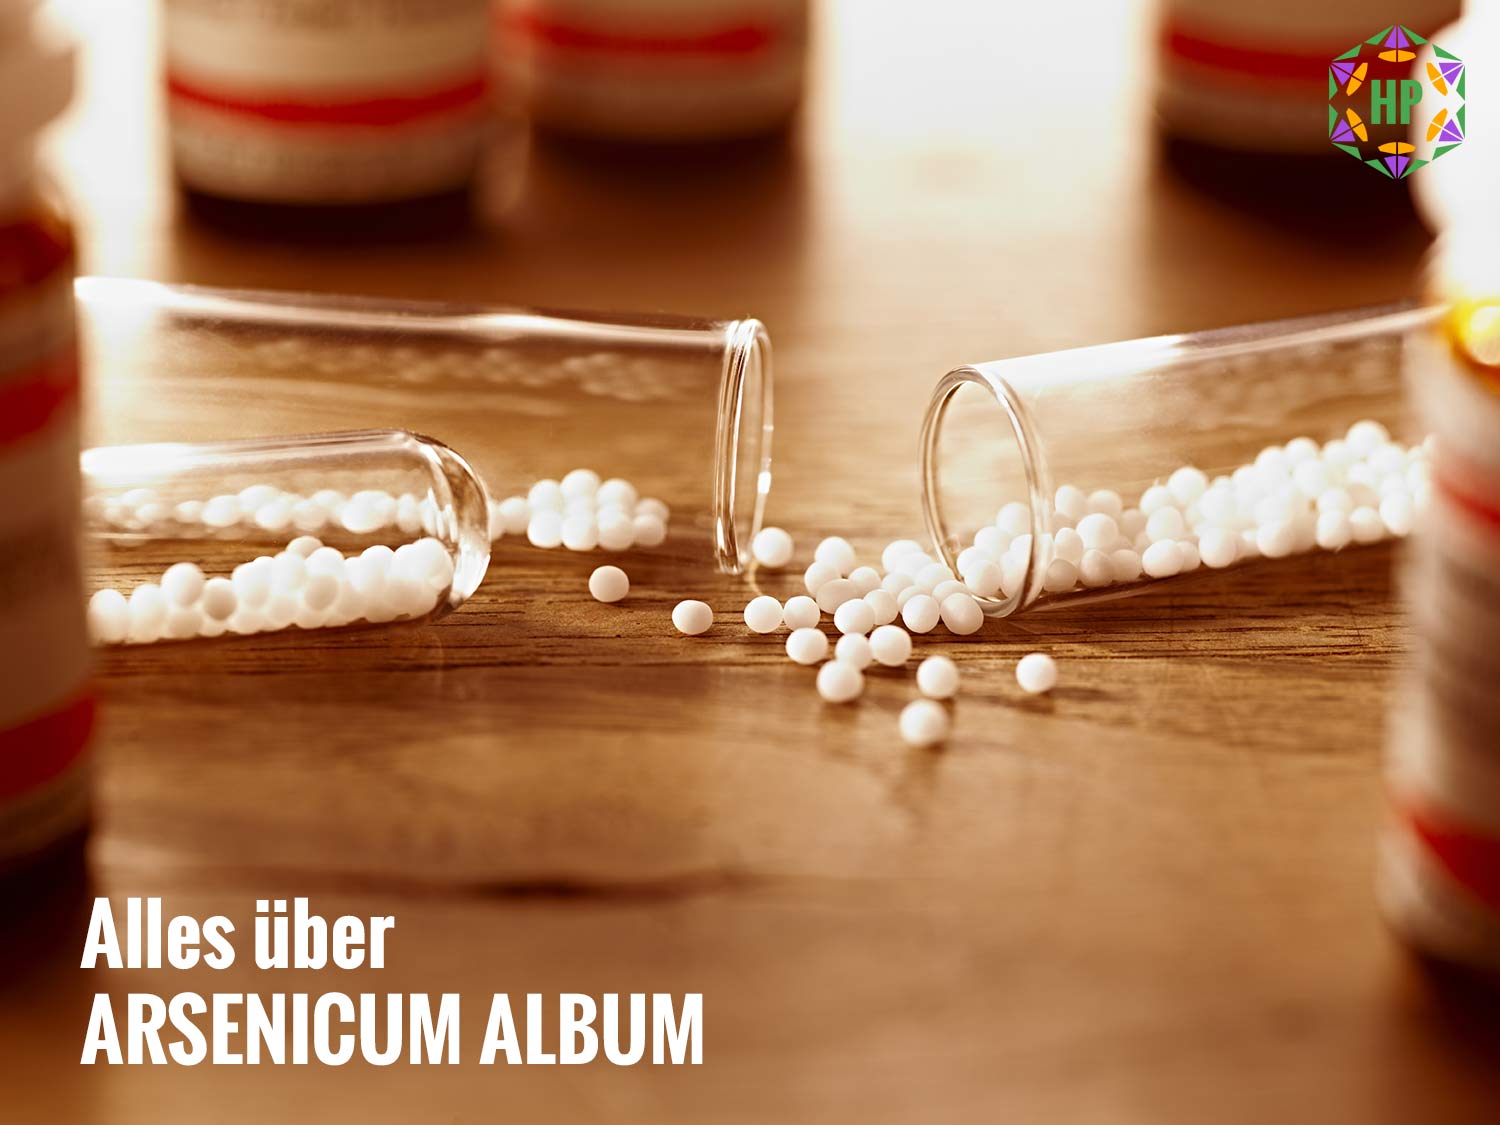 Arsenicum album